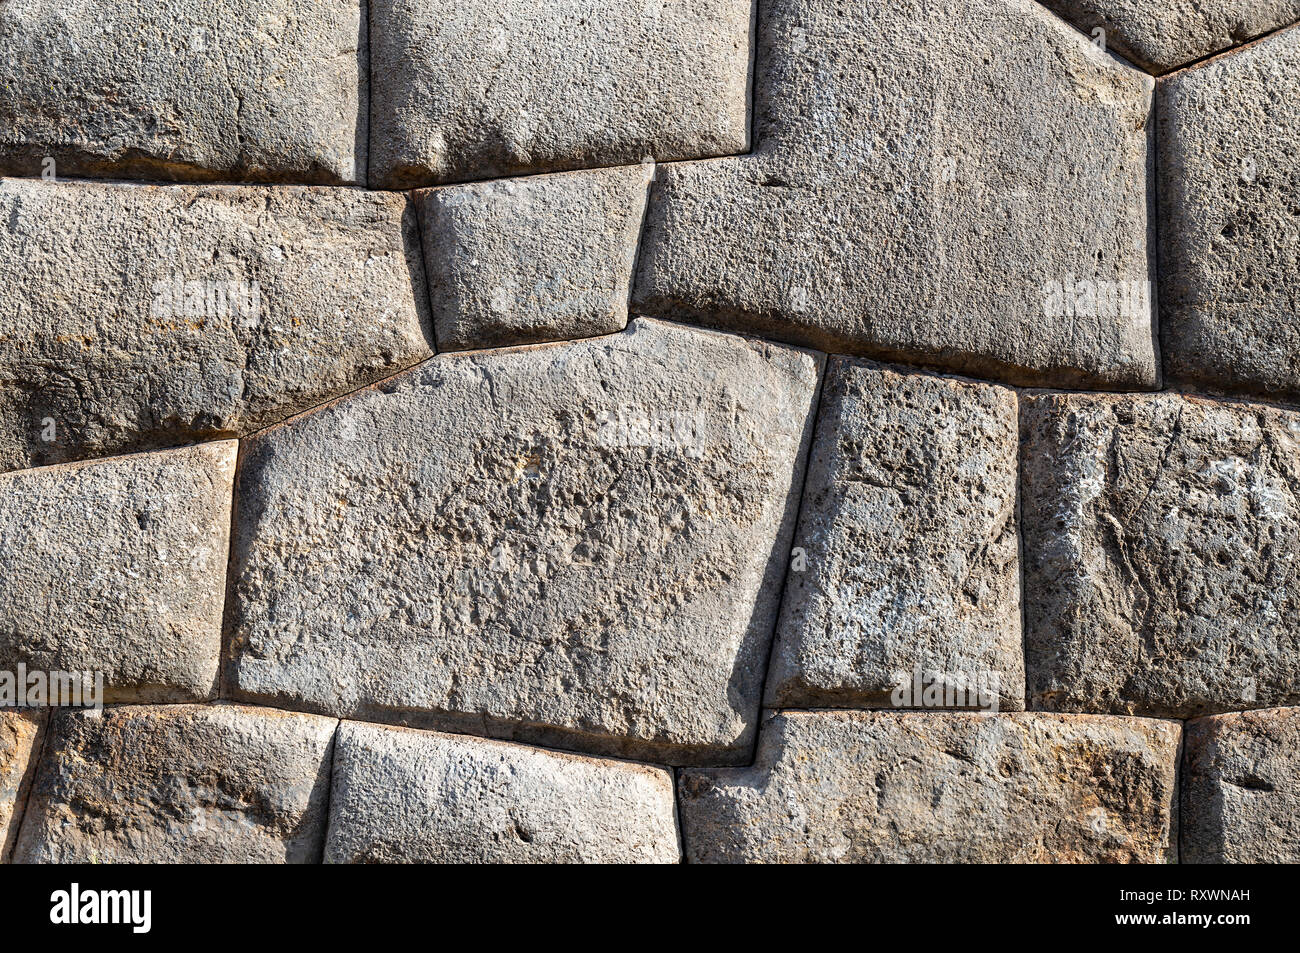 Rocas de granito y la mampostería inca más finas de la civilización Inca con un muro inca en el parque arqueológico de Sacsayhuaman, la ruina de la ciudad de Cusco, Perú. Foto de stock